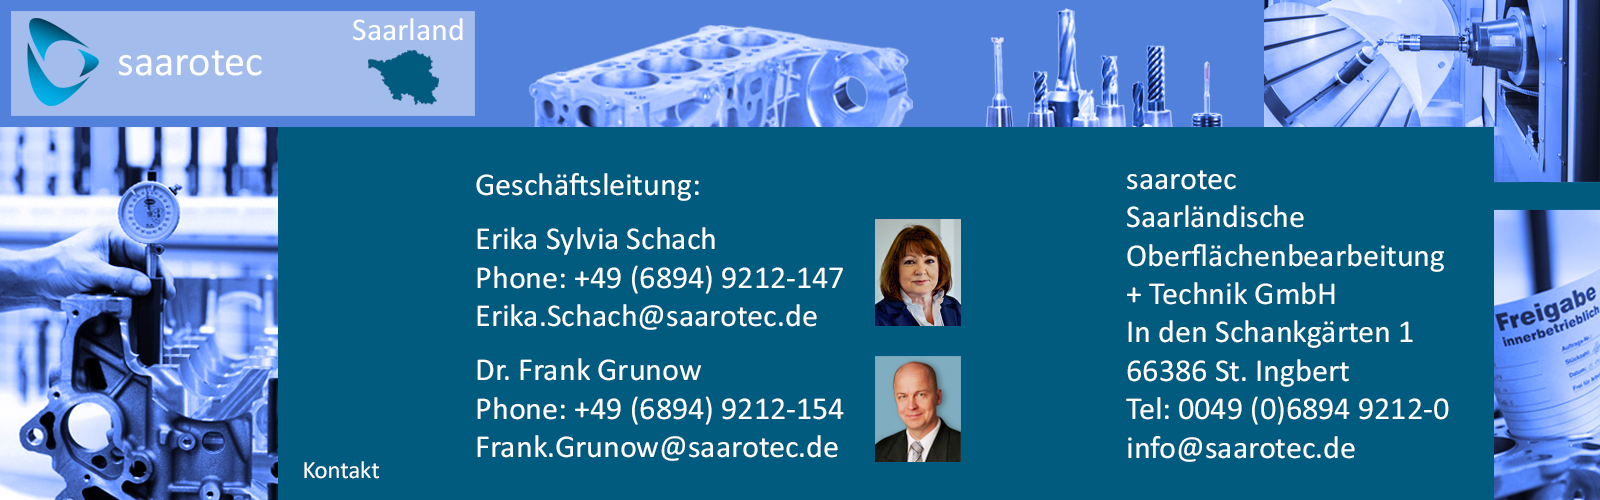 Unsere Leistungen saarotec Saarländische Oberflächenbearbeitung und Technik GmbH